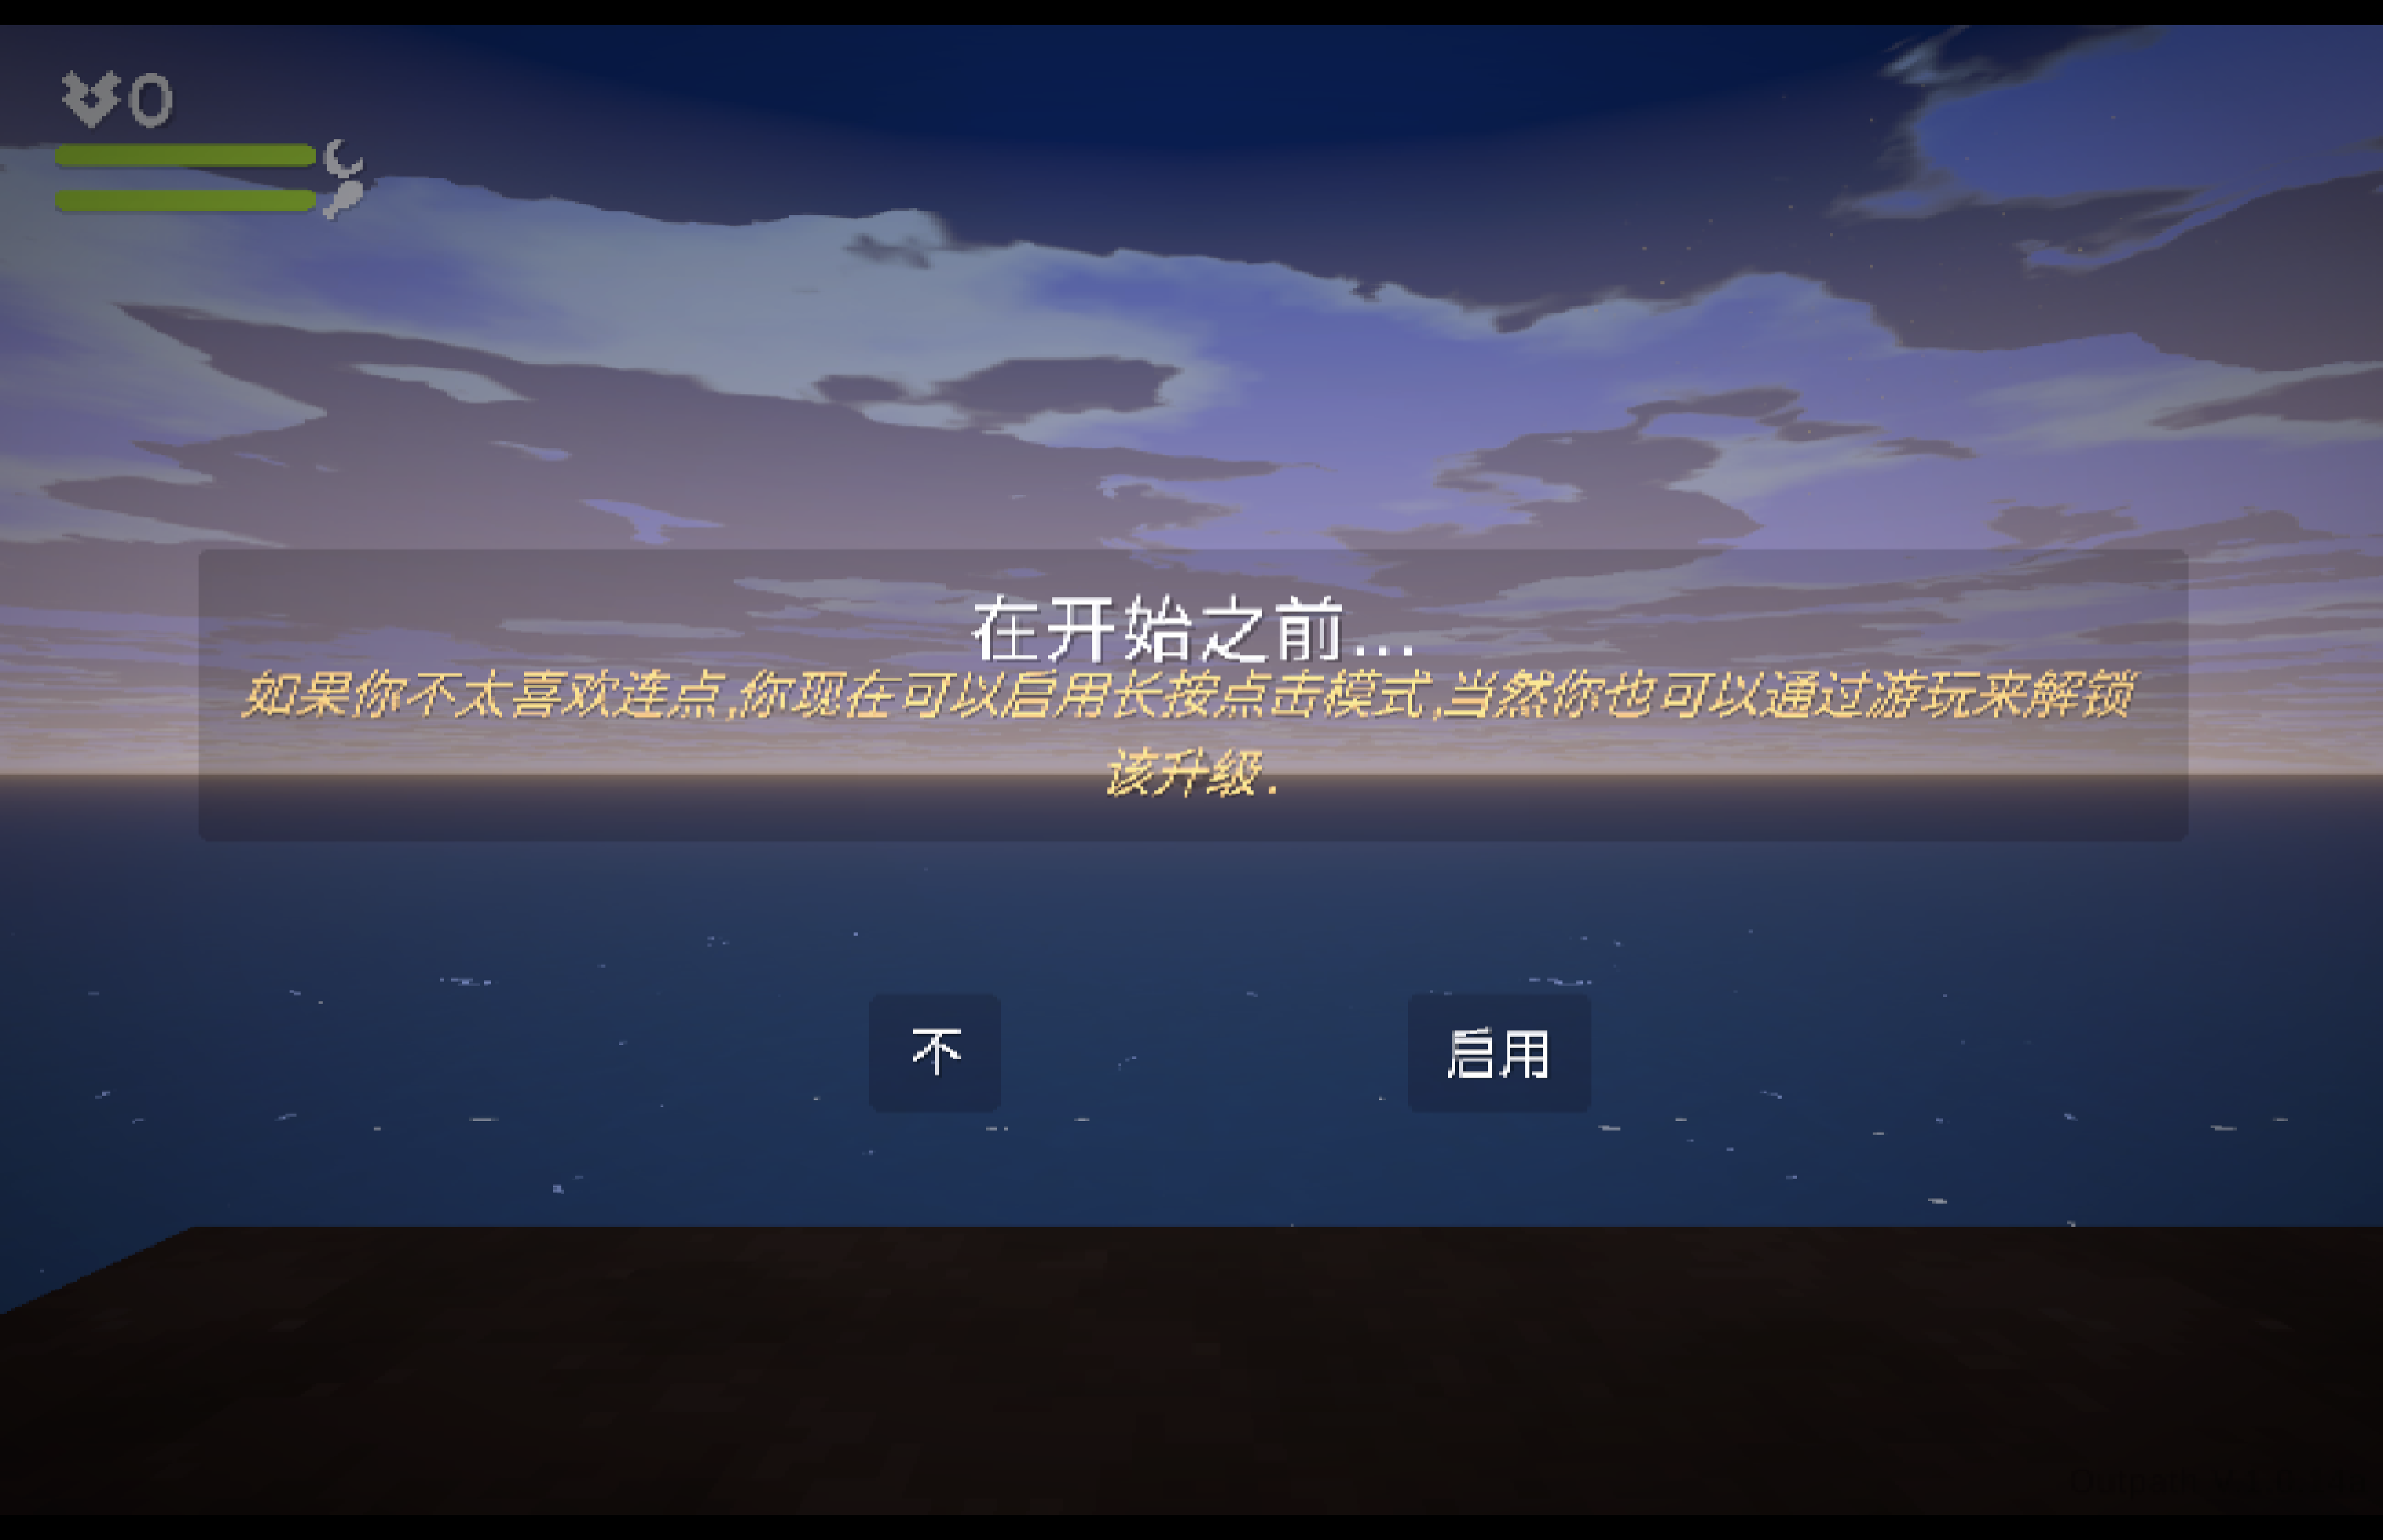 浮岛新世界 for Mac Outpath v1.0.14a 中文移植版 苹果电脑